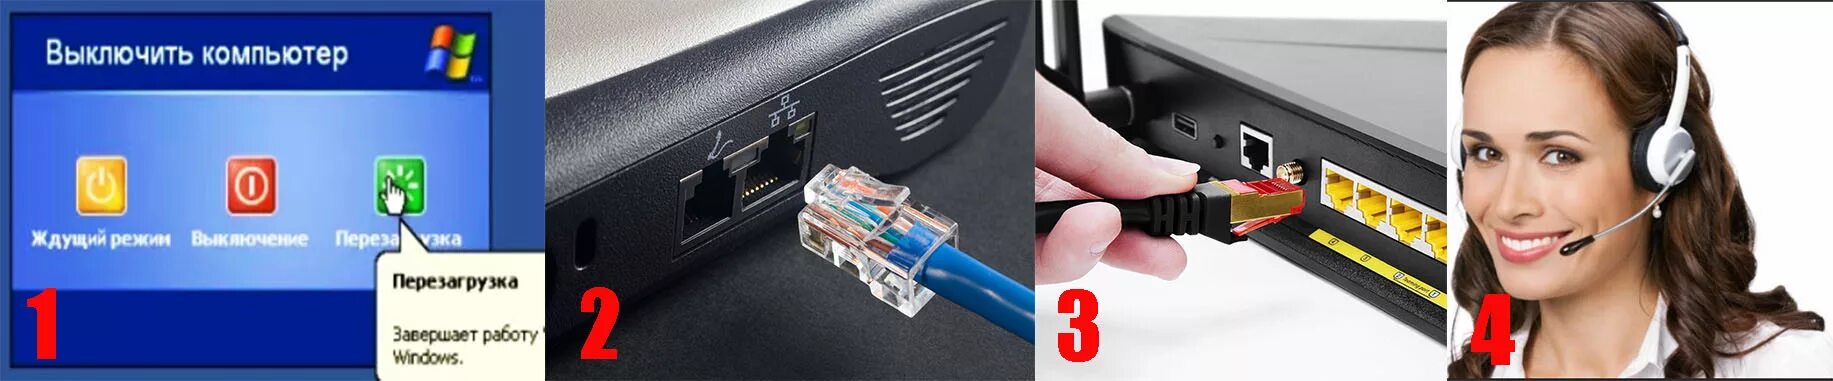 Патч-корд для роутера. Кабель Ethernet подключен неправильно или поврежден. Сетевой кабель для интернета подключен неправильно или поврежден. Ноутбук не видит сетевой кабель (шнур интернета).